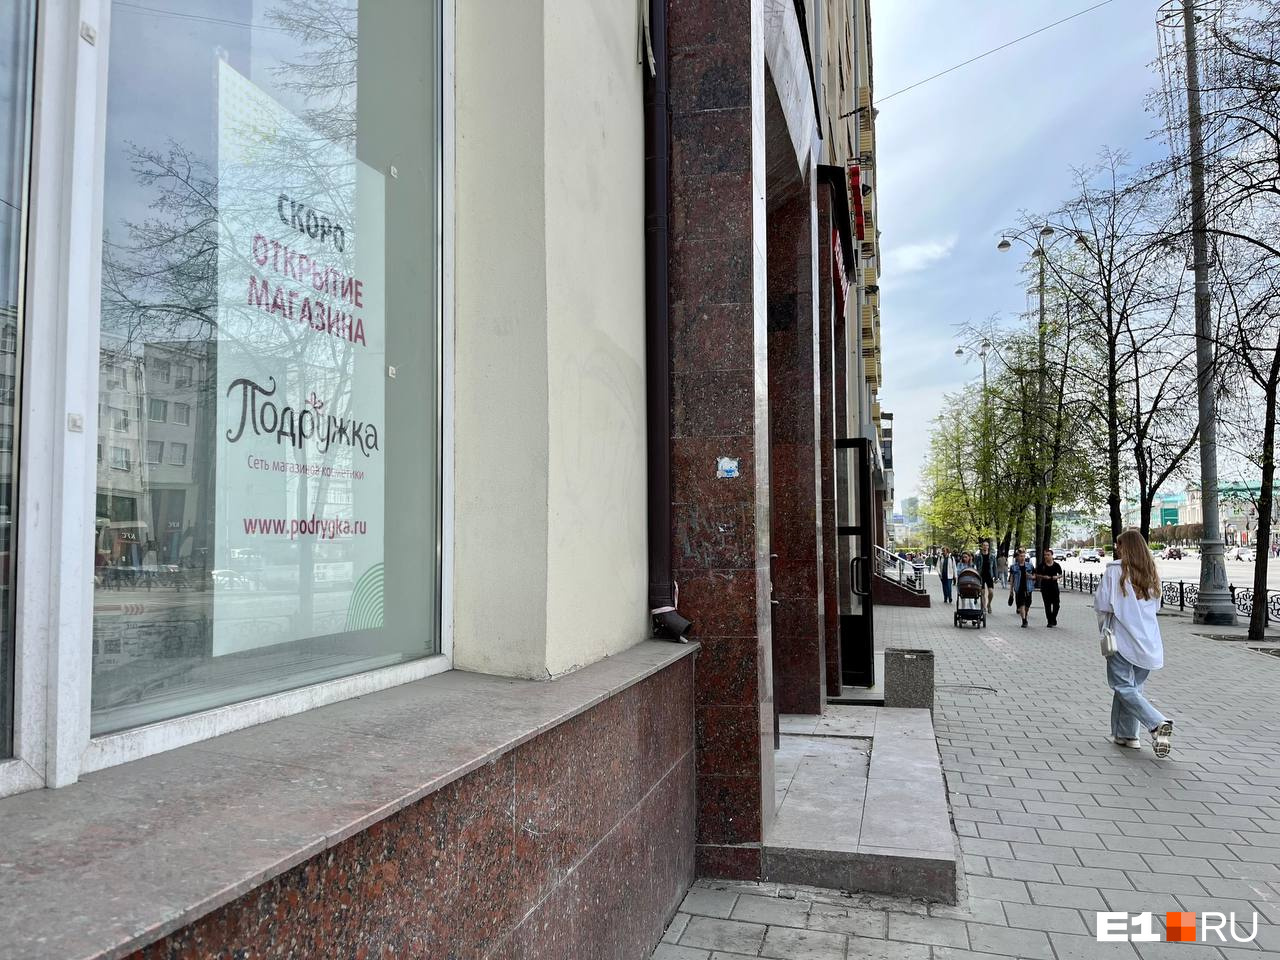 В Екатеринбурге на «проклятом» месте решили открыть магазин косметики от владельцев «Л’Этуаля»